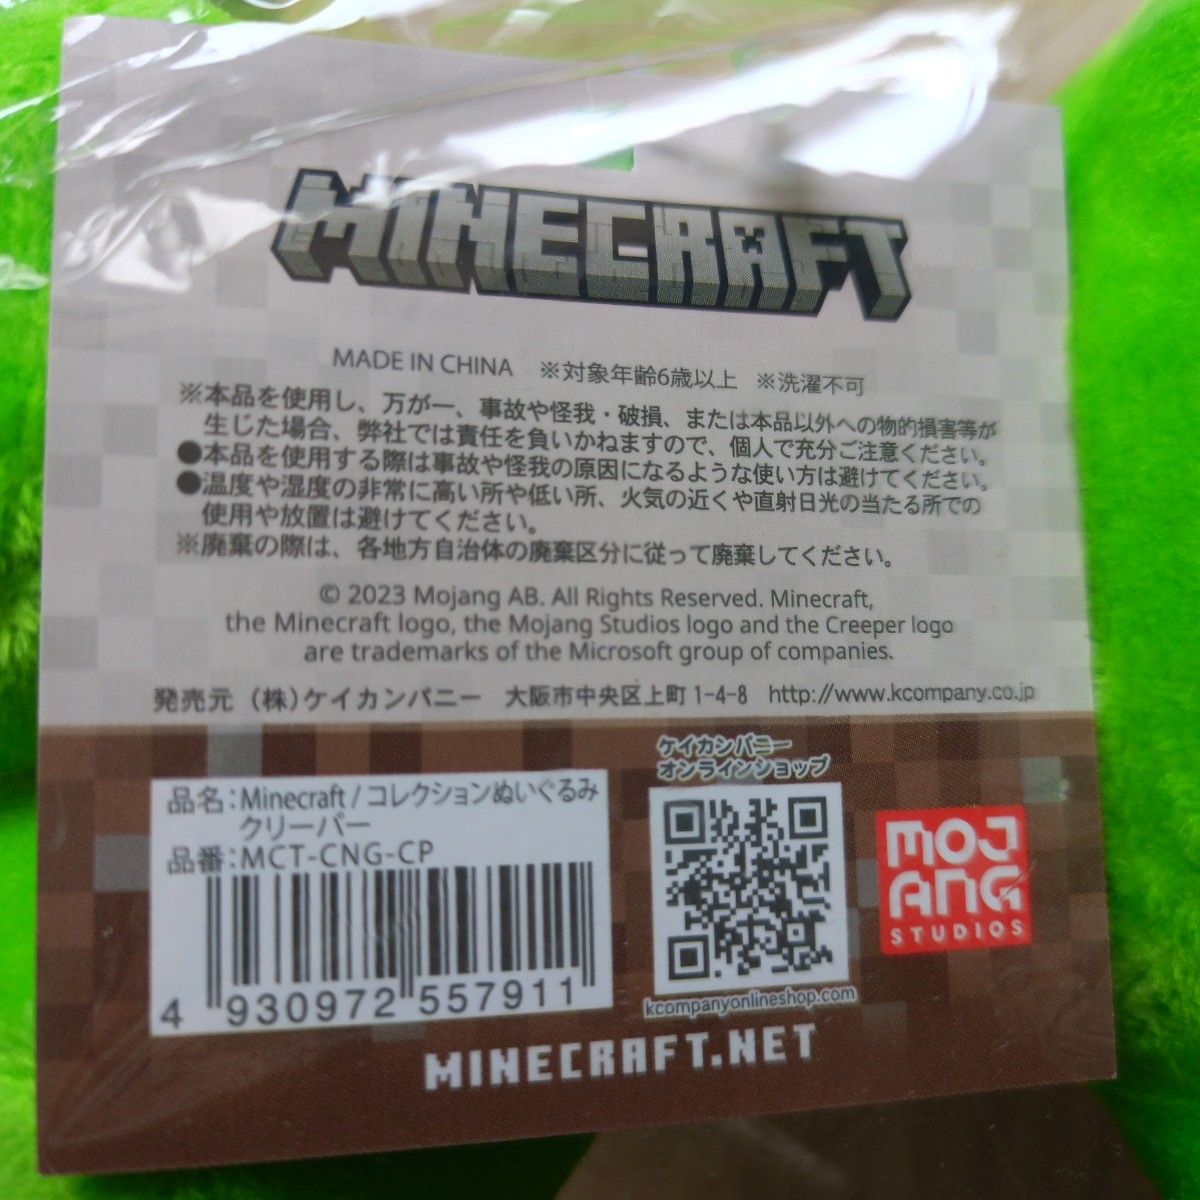 ケイカンパニー Minecraft コレクションぬいぐるみ クリーパー MCT-CNG-CP